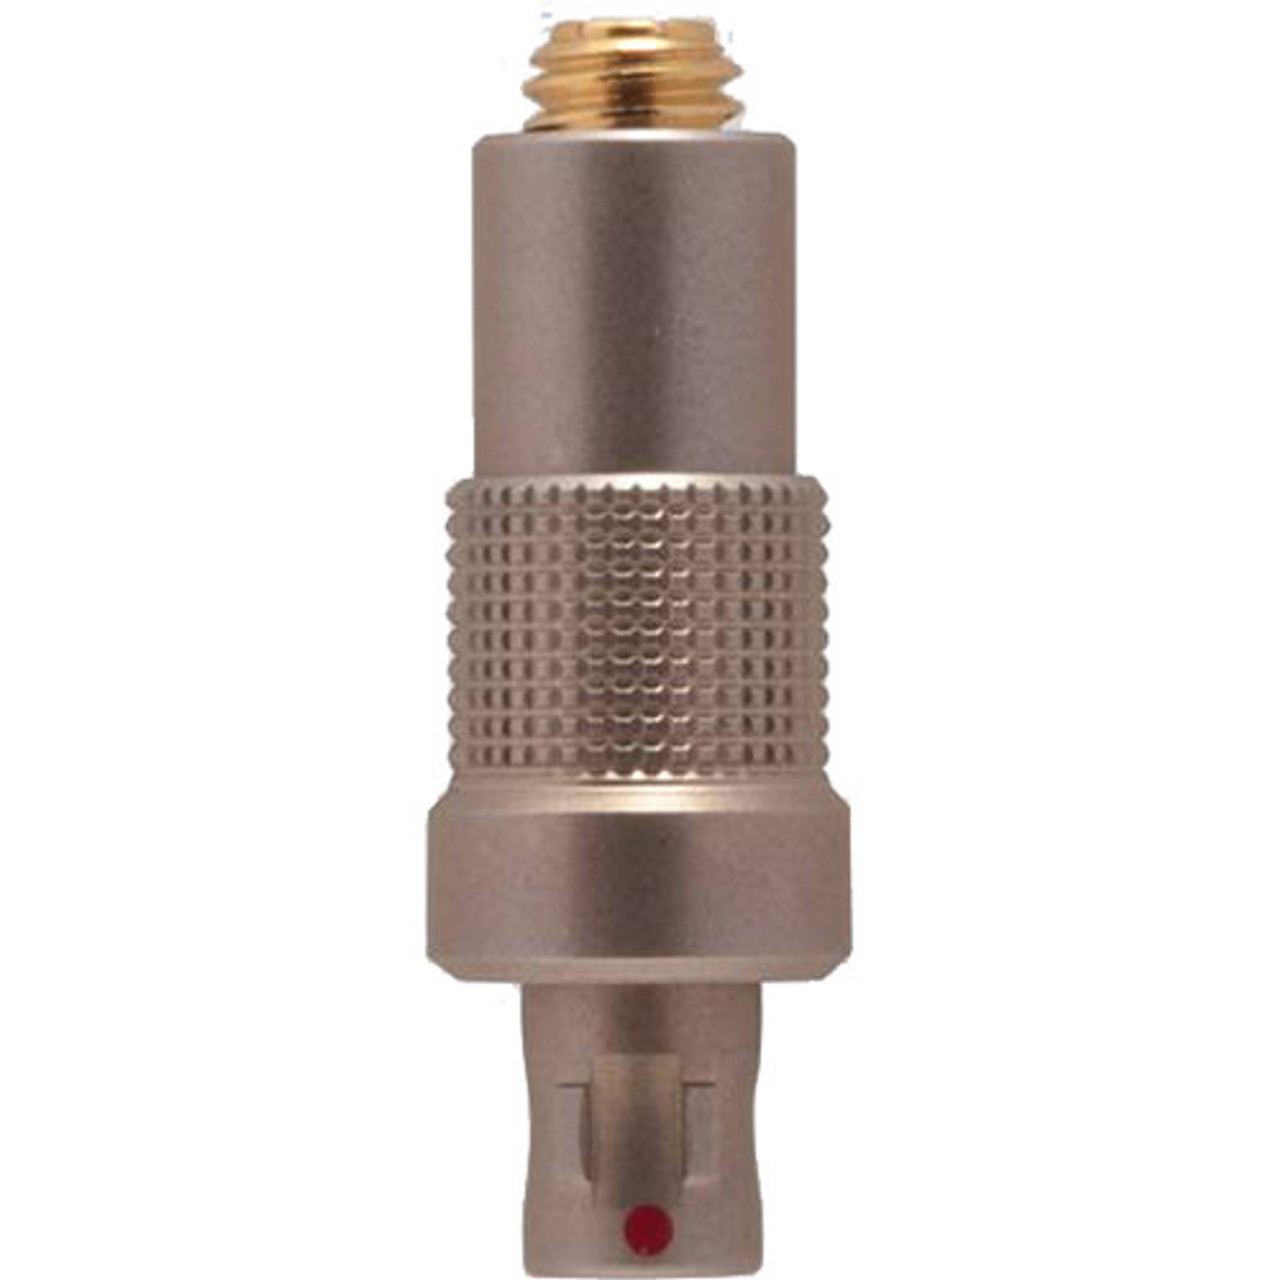 Shure MD40LEMO Microdot to LEMO 3-Pin Adapter for Sennheiser Wireless Transmitters (MD40LEMO)